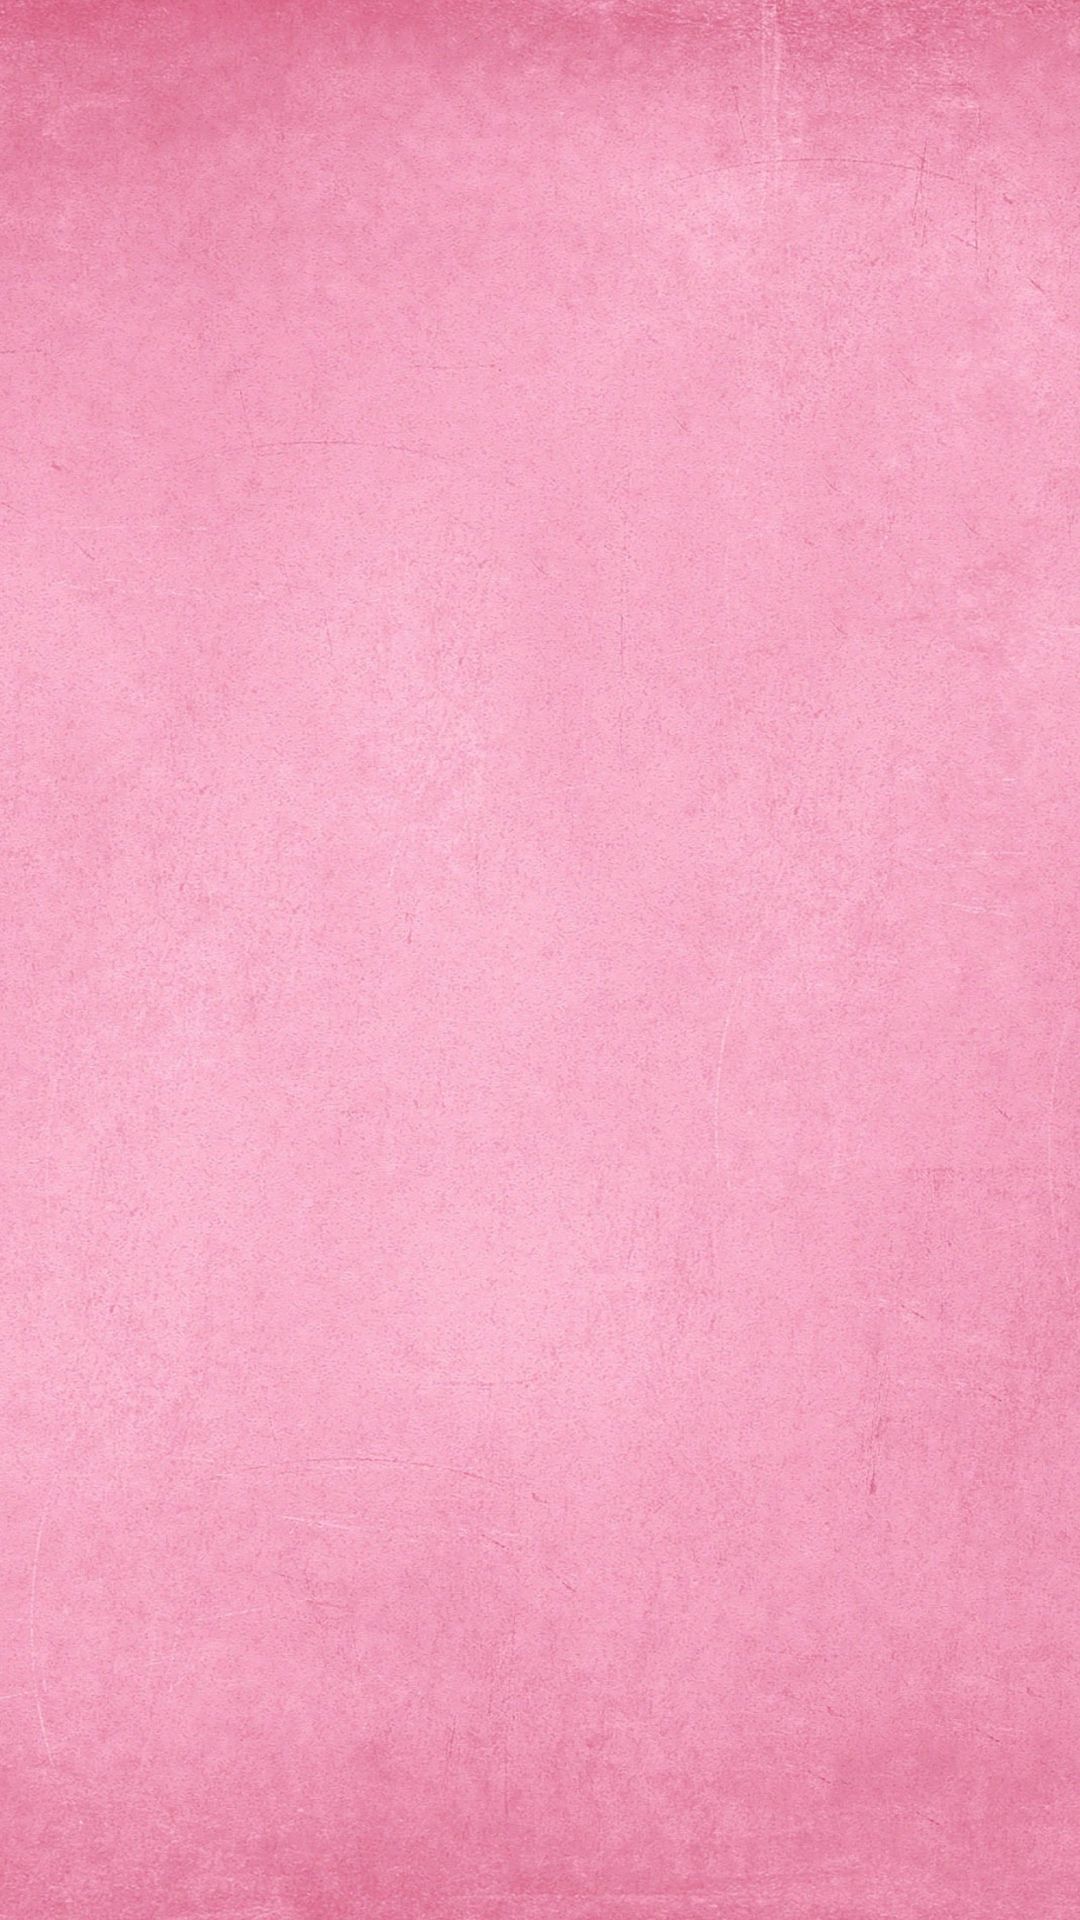 Pink wallpaper iphone .com